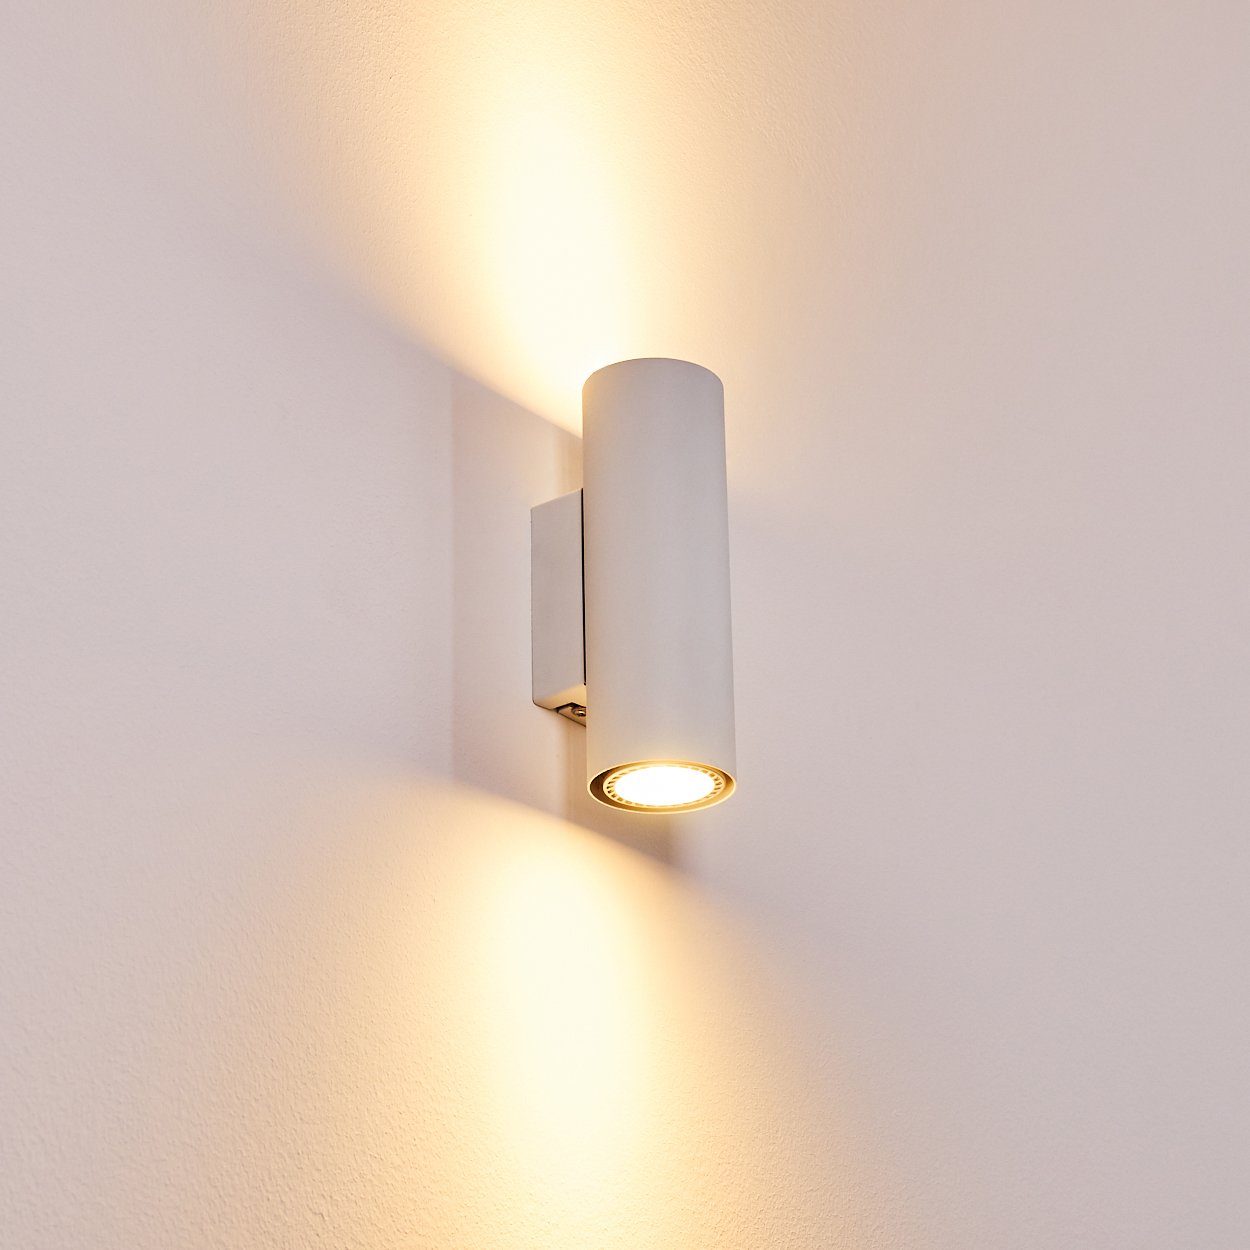 LED Flur Dielen Leuchten Strahler Wand Beleuchtung Wohn Schlaf Zimmer Lampen 